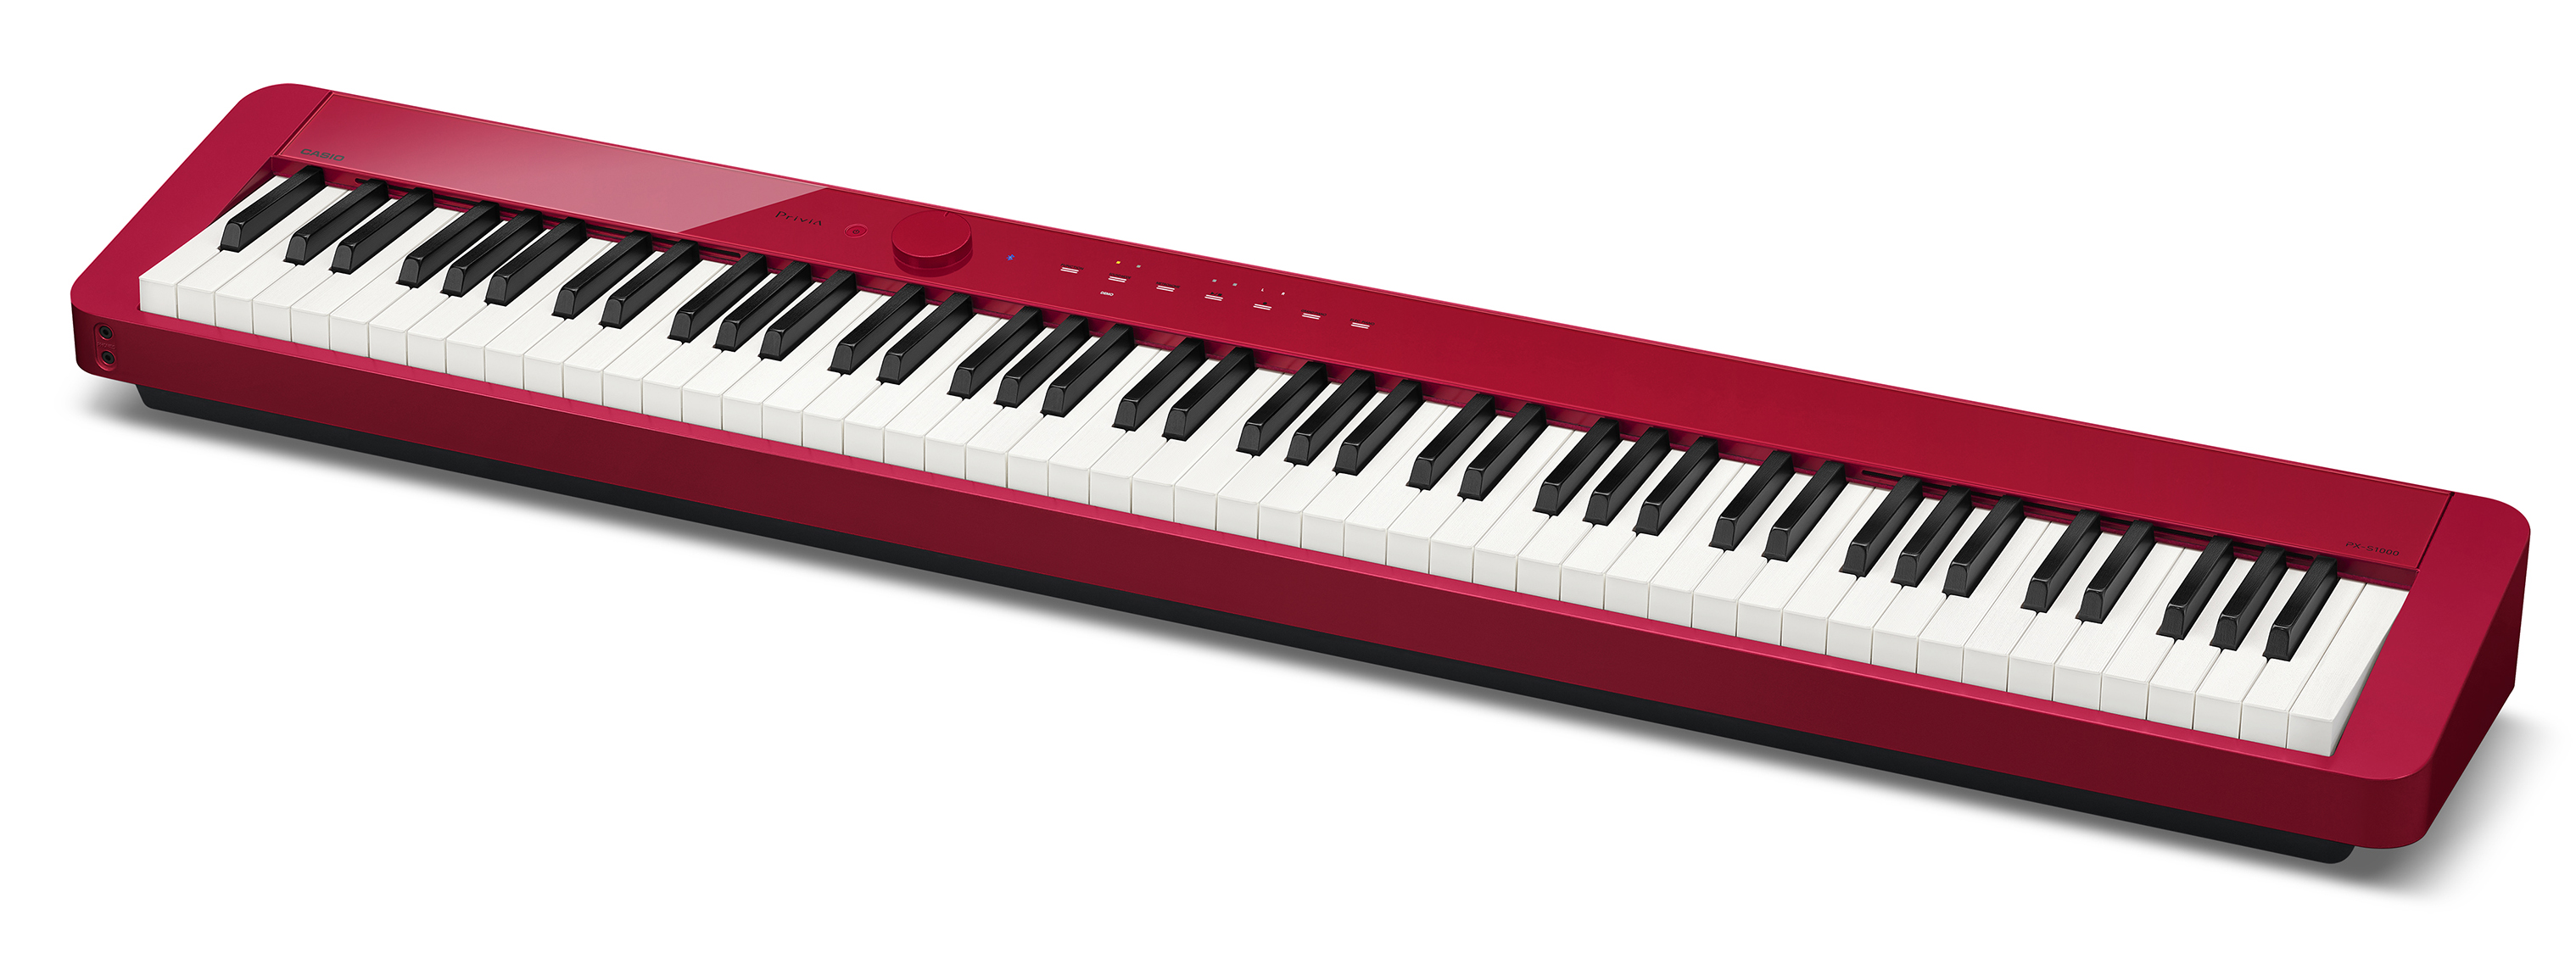 業界で最もスリムでスタイリッシュな電子ピアノ“Privia”「PX-S1000」に新色を追加｜カシオ計算機株式会社のプレスリリース